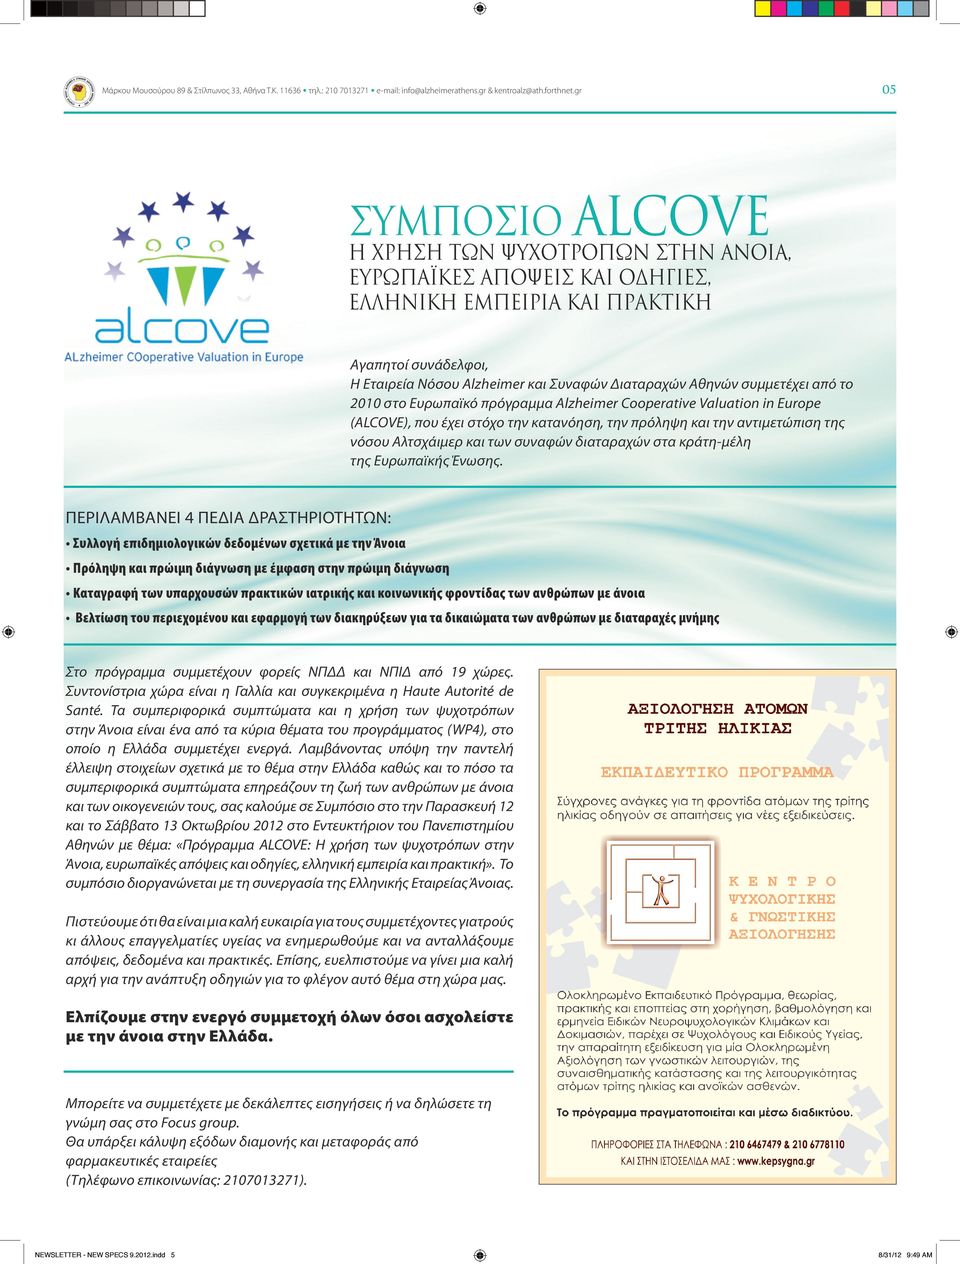 συμμετέχει από το 2010 στο Ευρωπαϊκό πρόγραμμα Alzheimer Cooperative Valuation in Europe (ALCOVE), που έχει στόχο την κατανόηση, την πρόληψη και την αντιμετώπιση της νόσου Αλτσχάιμερ και των συναφών